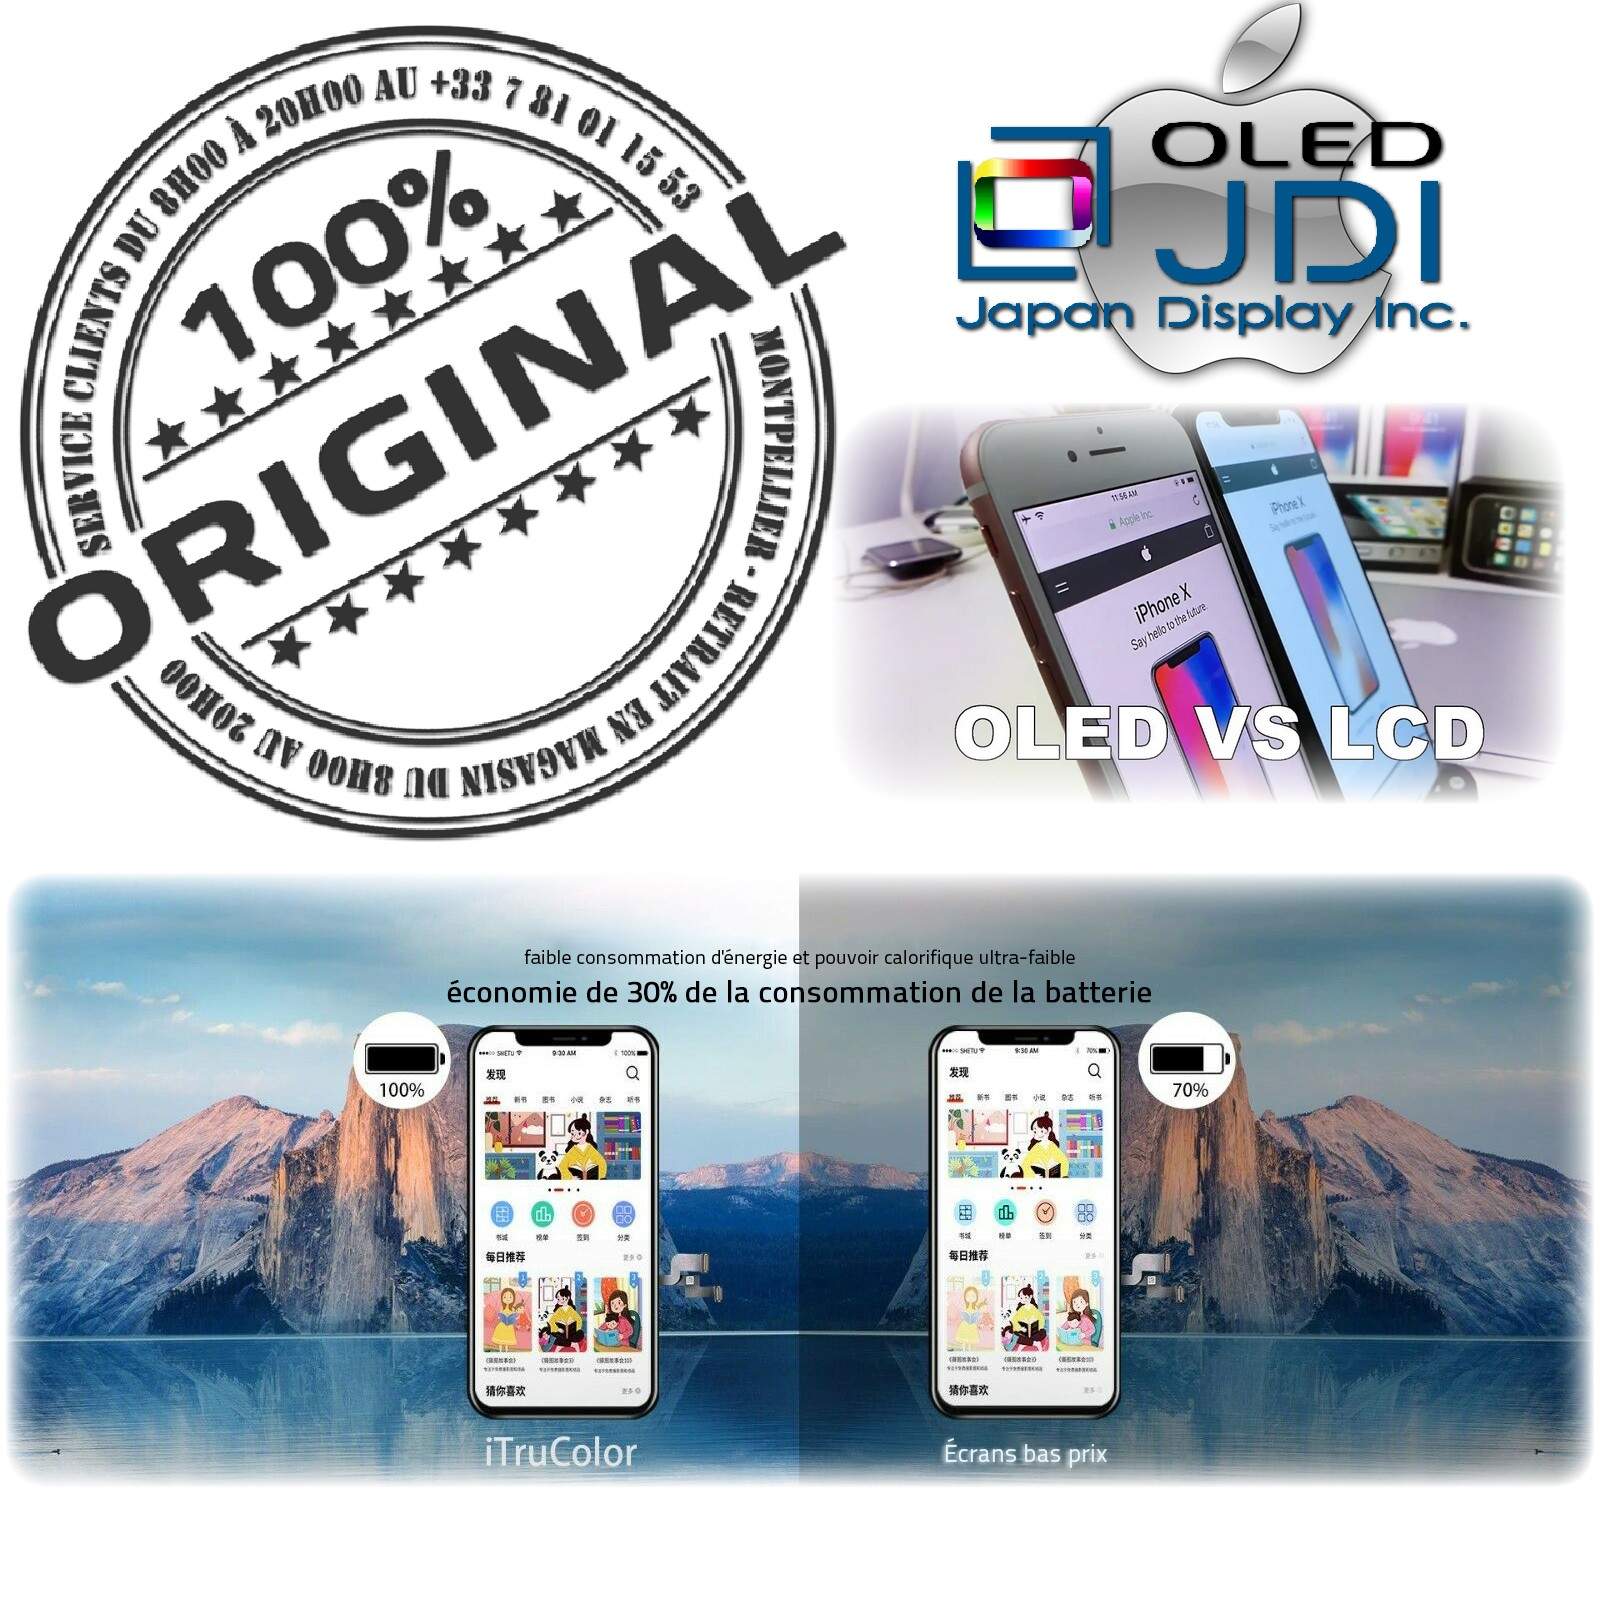 HDR ORIGINAL Verre Tactile iPhone XS iTruColor soft OLED Qualité SmartPhone 3D Touch Réparation Écran HD Super Retina 5.8 in